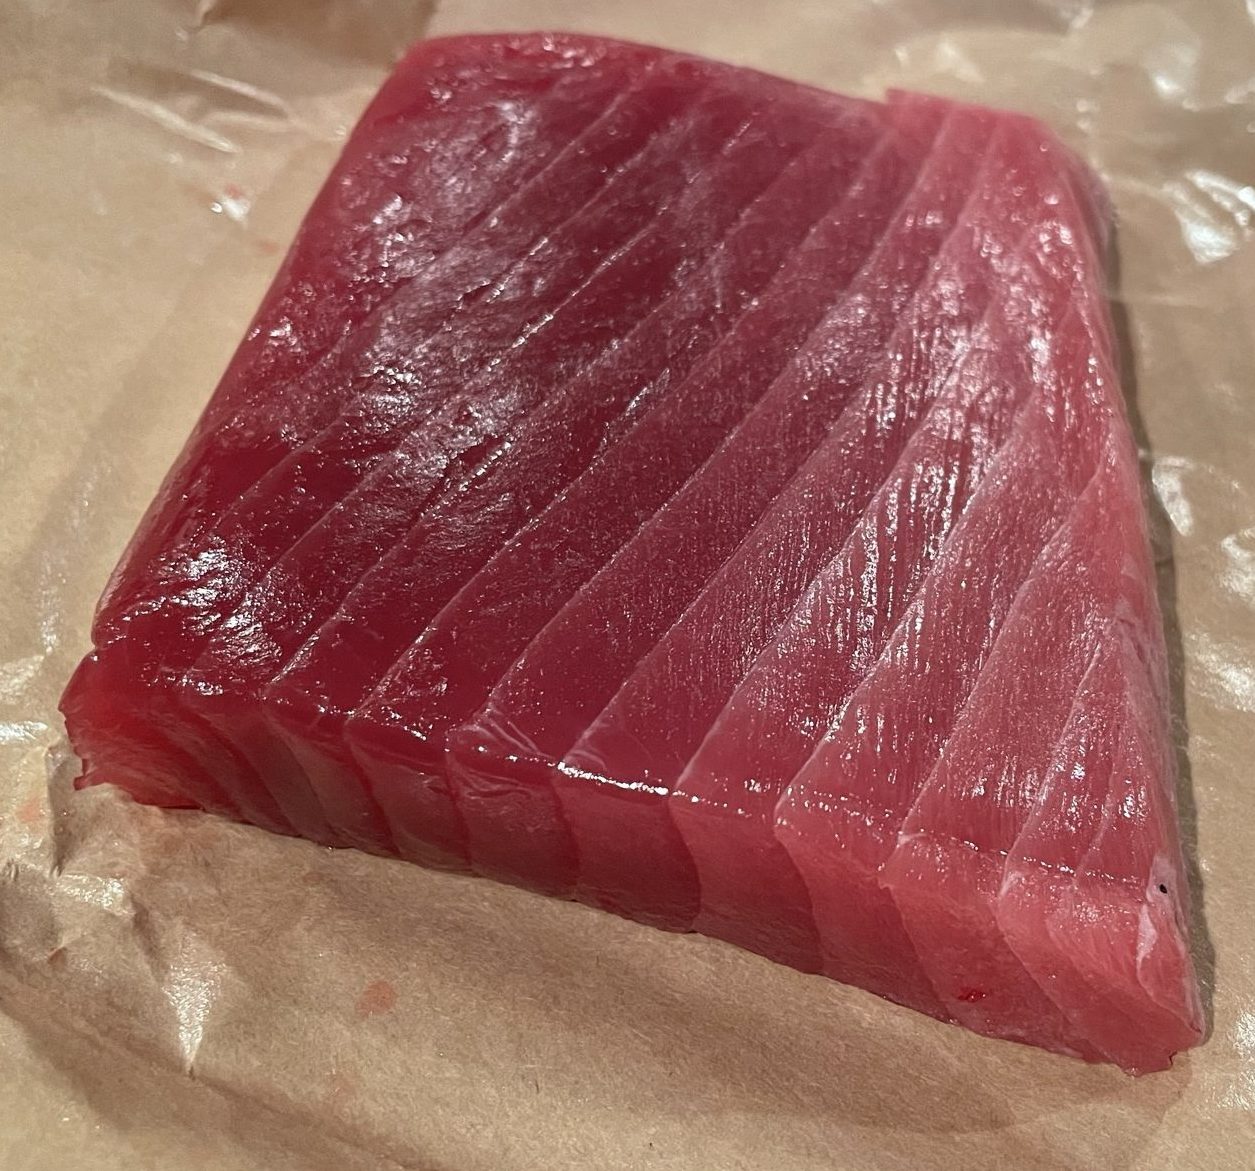 Block cut tuna